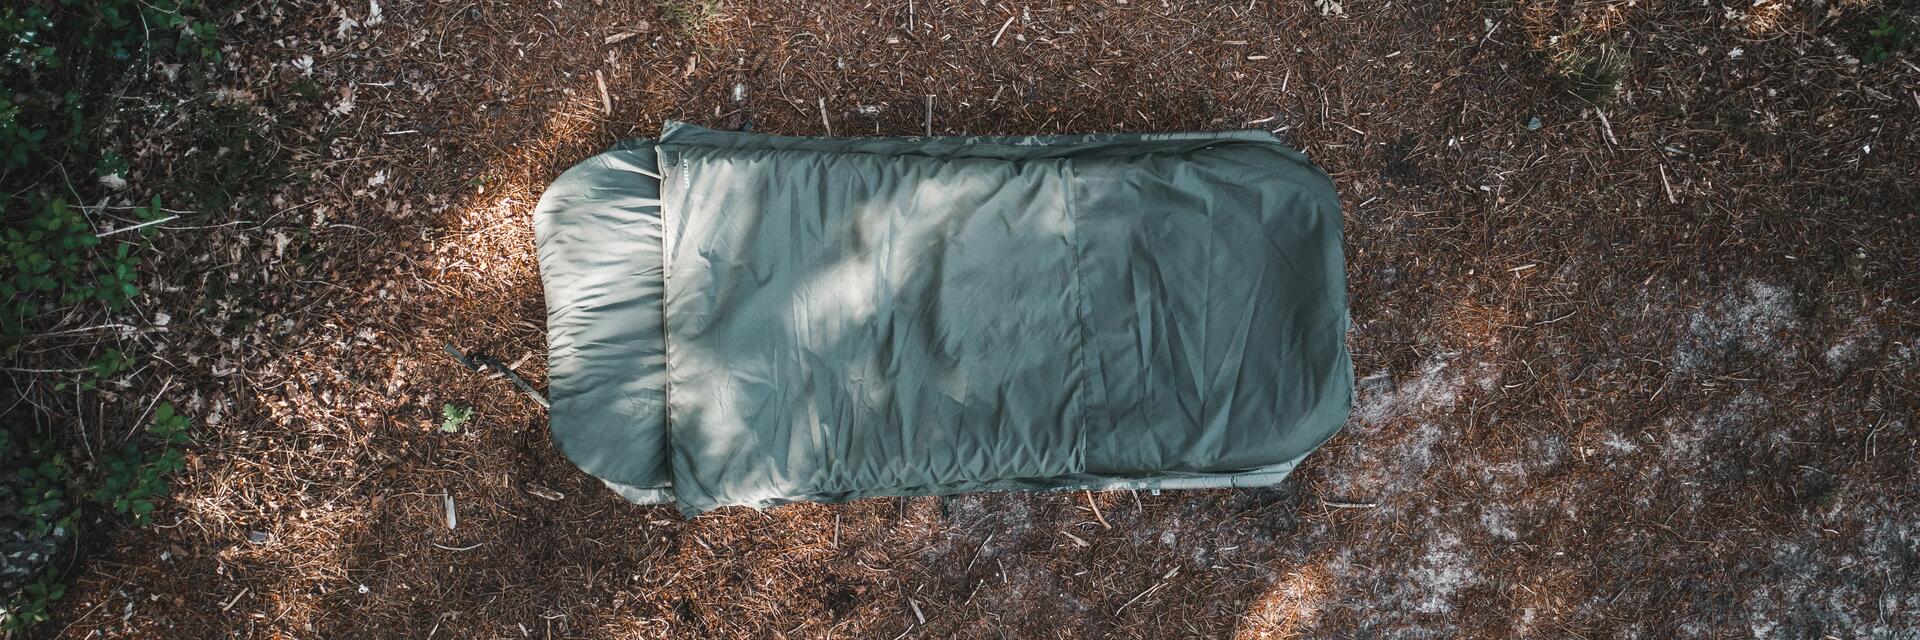 Como escolher corretamente o saco-cama decathlon